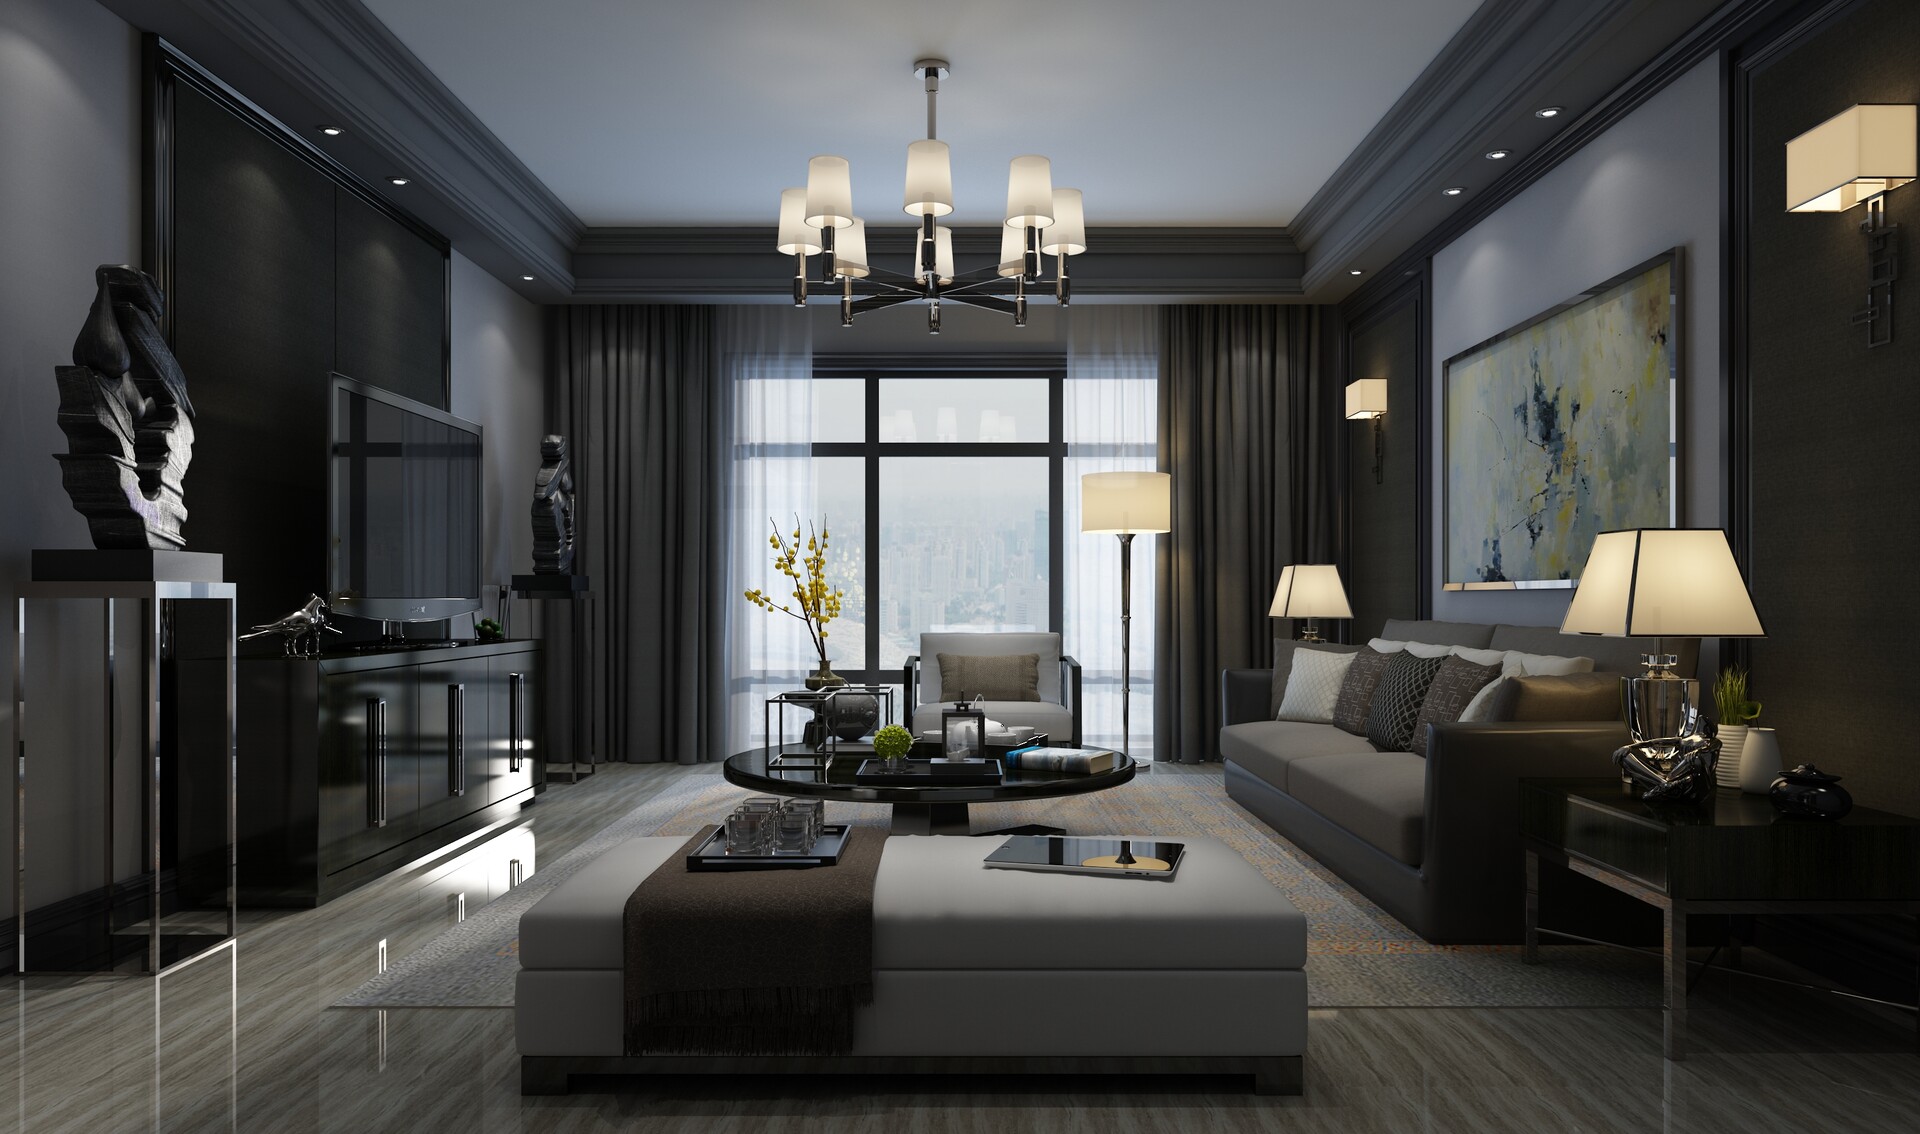 ArtStation - Living Room Interior Design